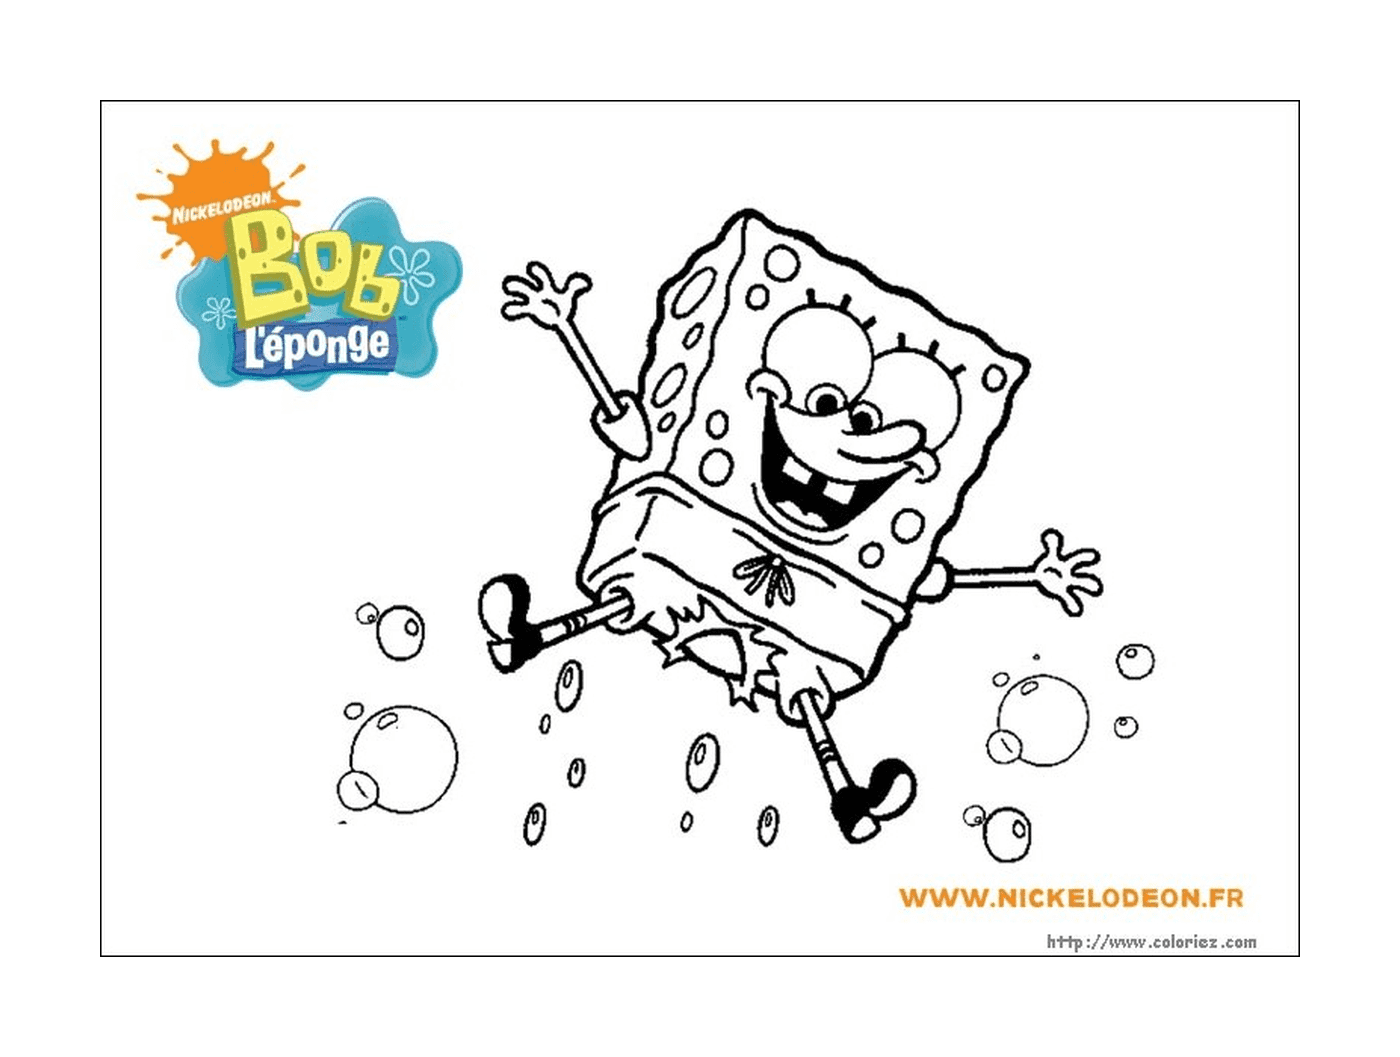  Bild eines Charakters von Sponge Bob 